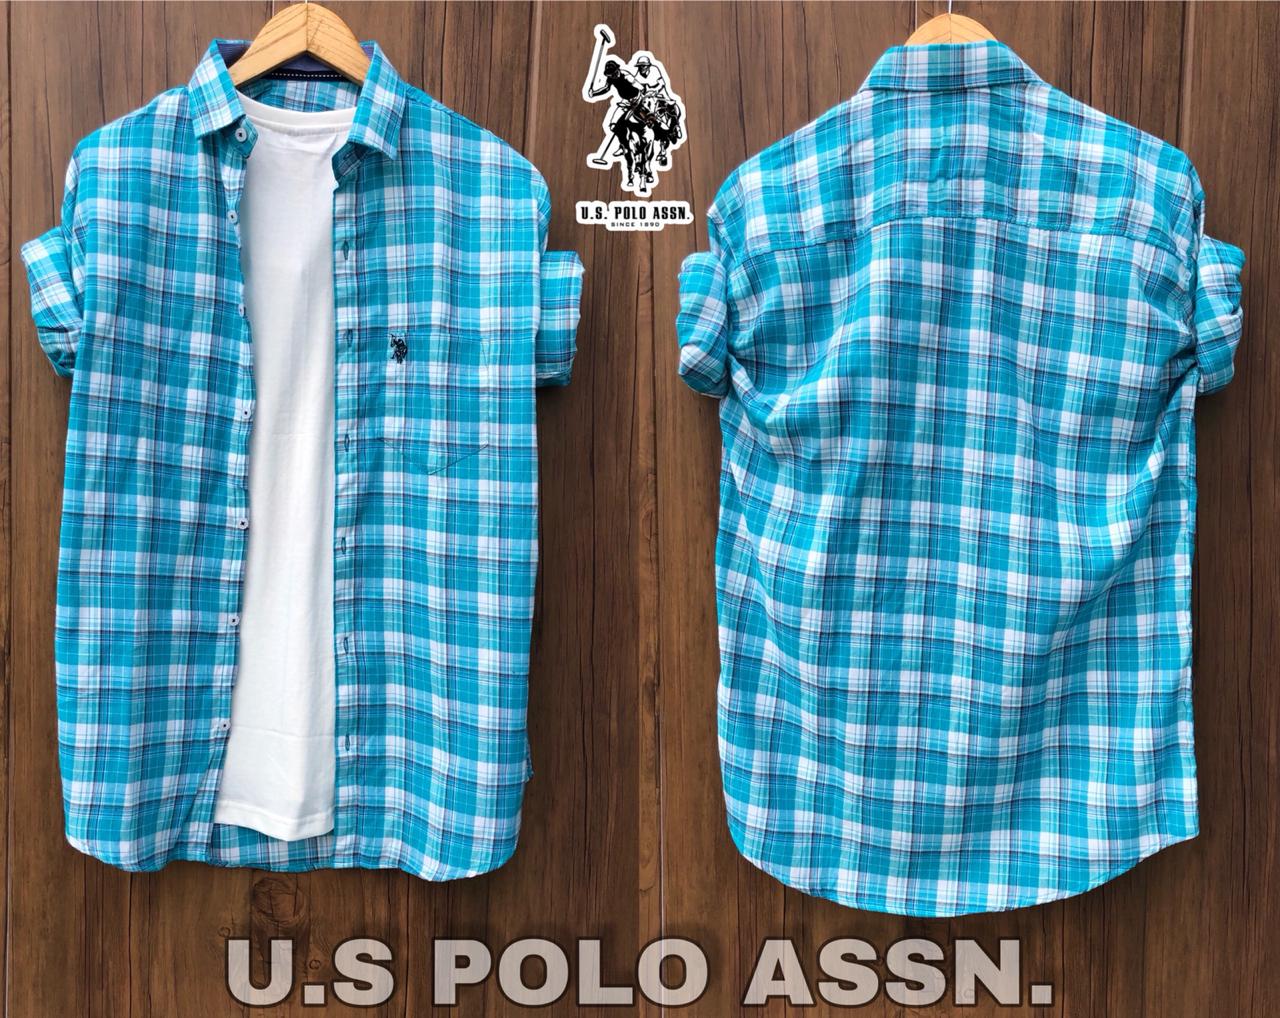 U.S POLO ASSN Check Shirt.